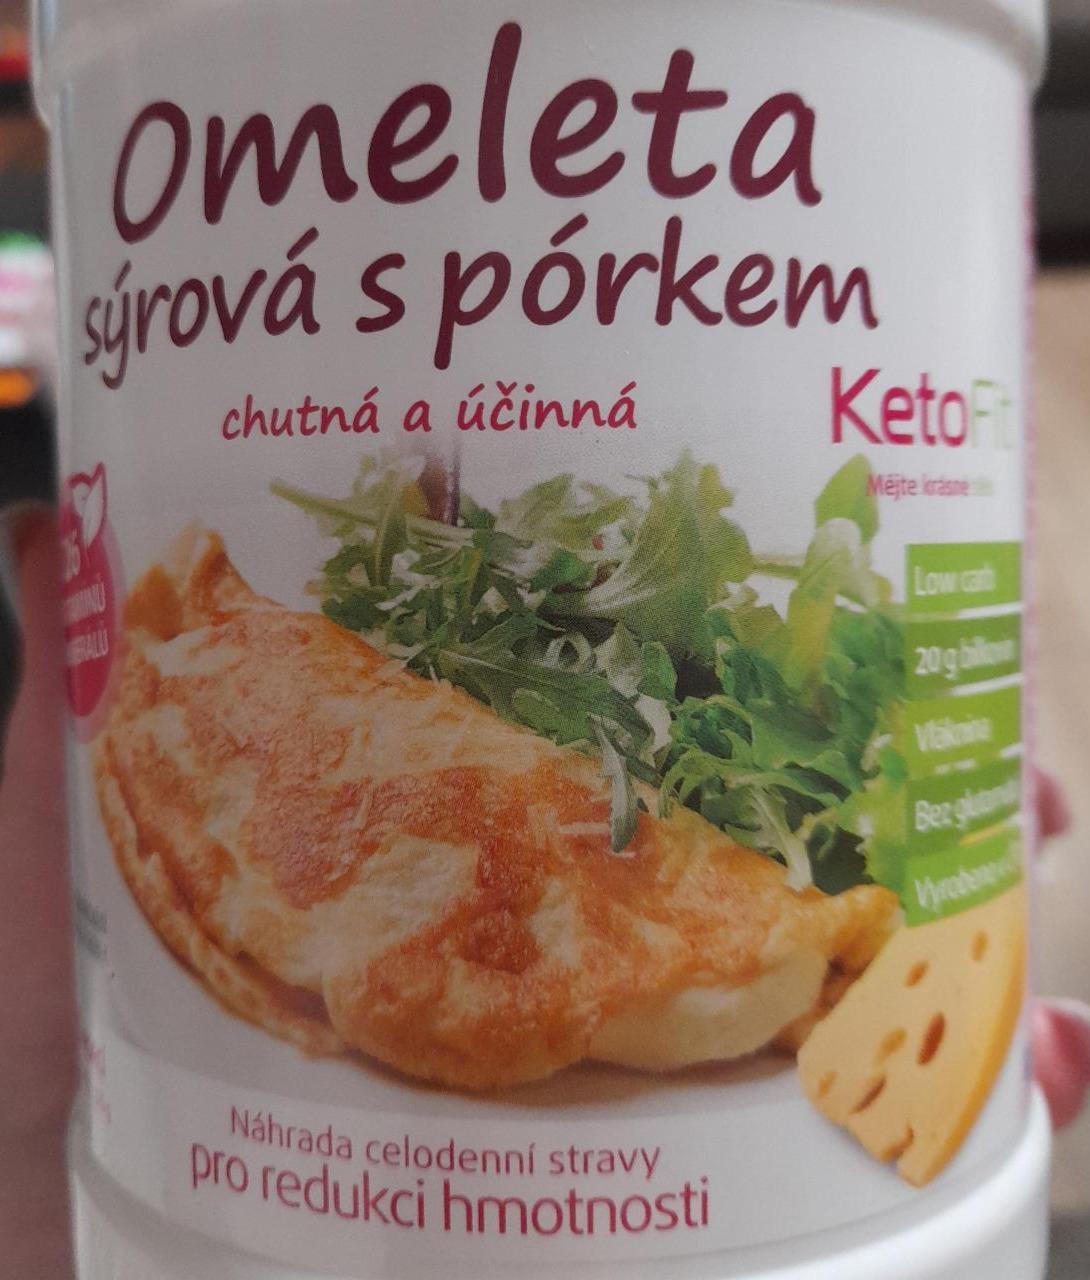 Fotografie - Omeleta sýrová s pórkem KetoFit